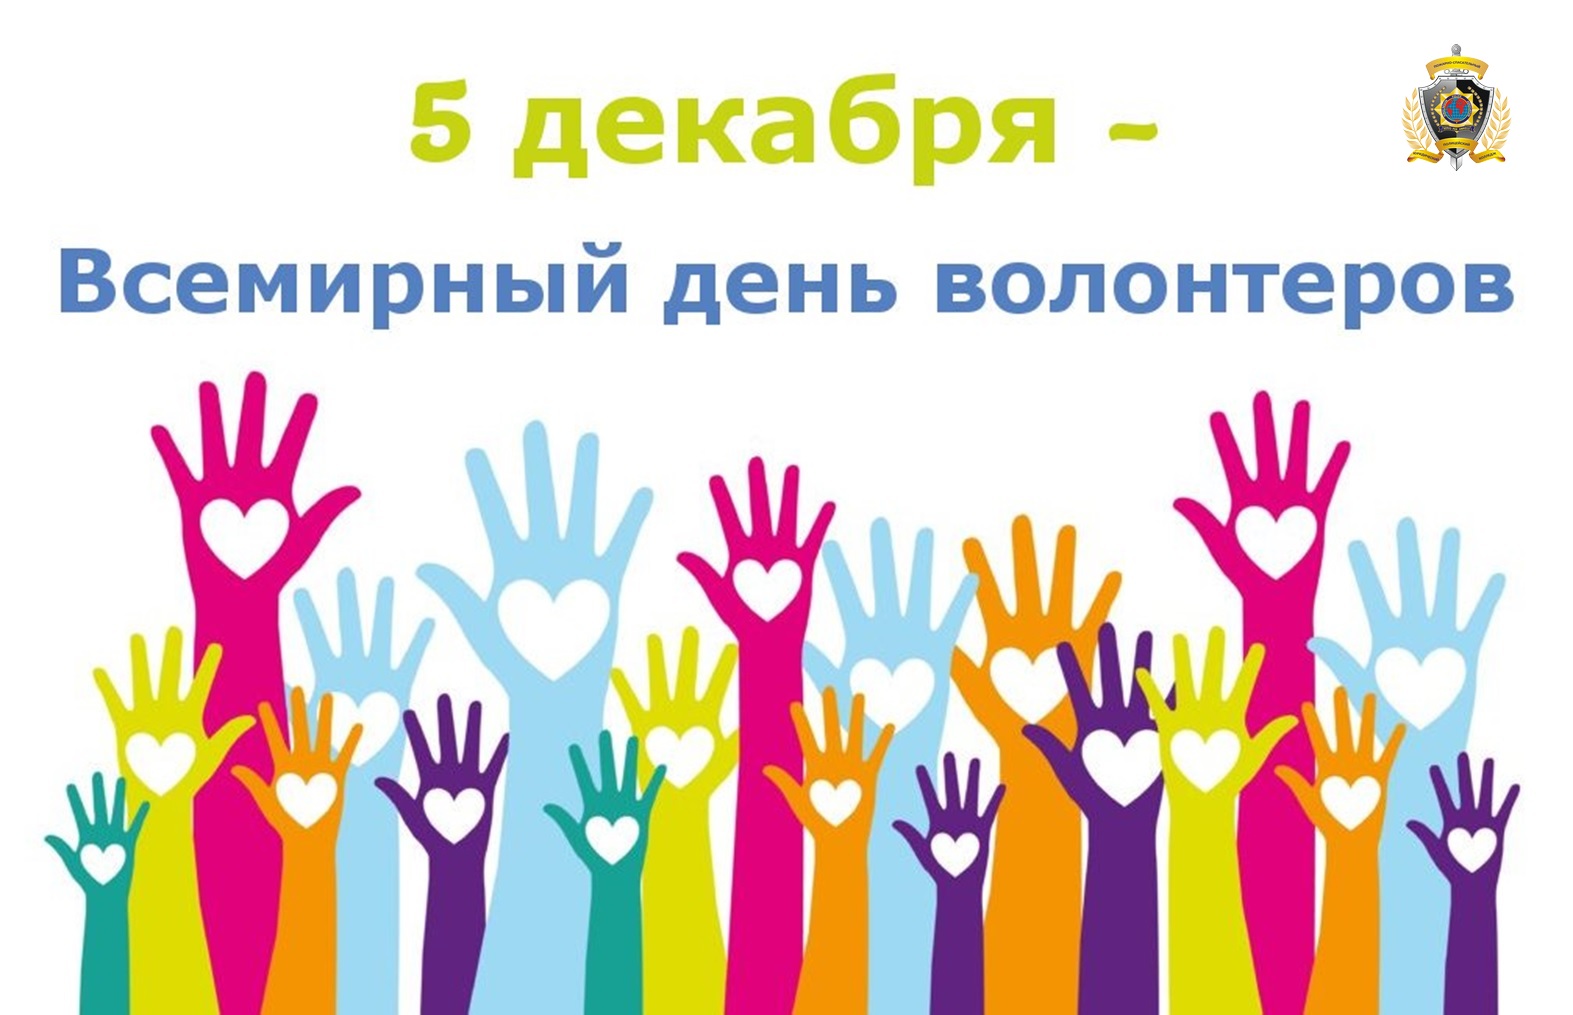 5 декабря День добровольца (волонтёра) в России.